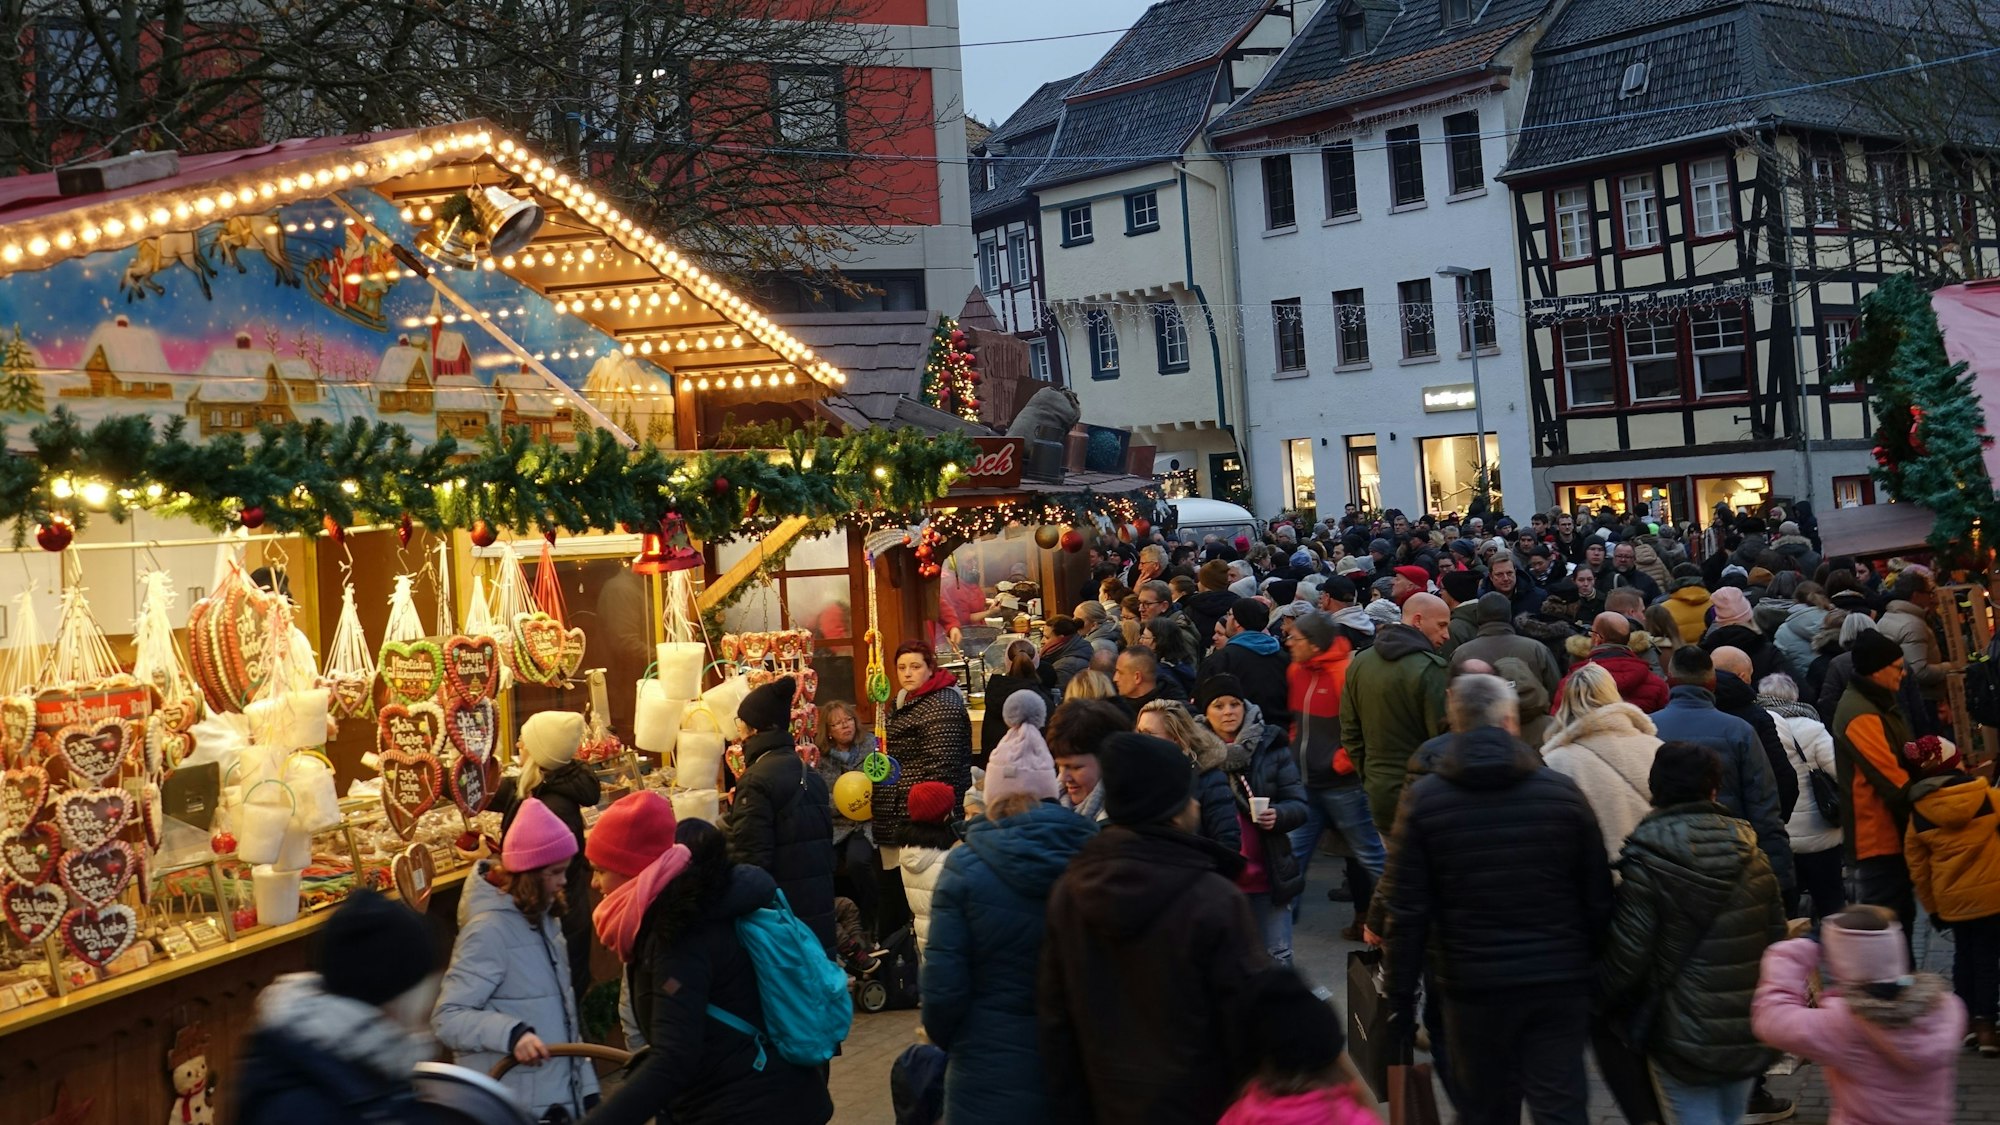 Der Weihnachtsmarkt in der historischen Altstadt mit beleuchteten Buden und vielen Menschen.